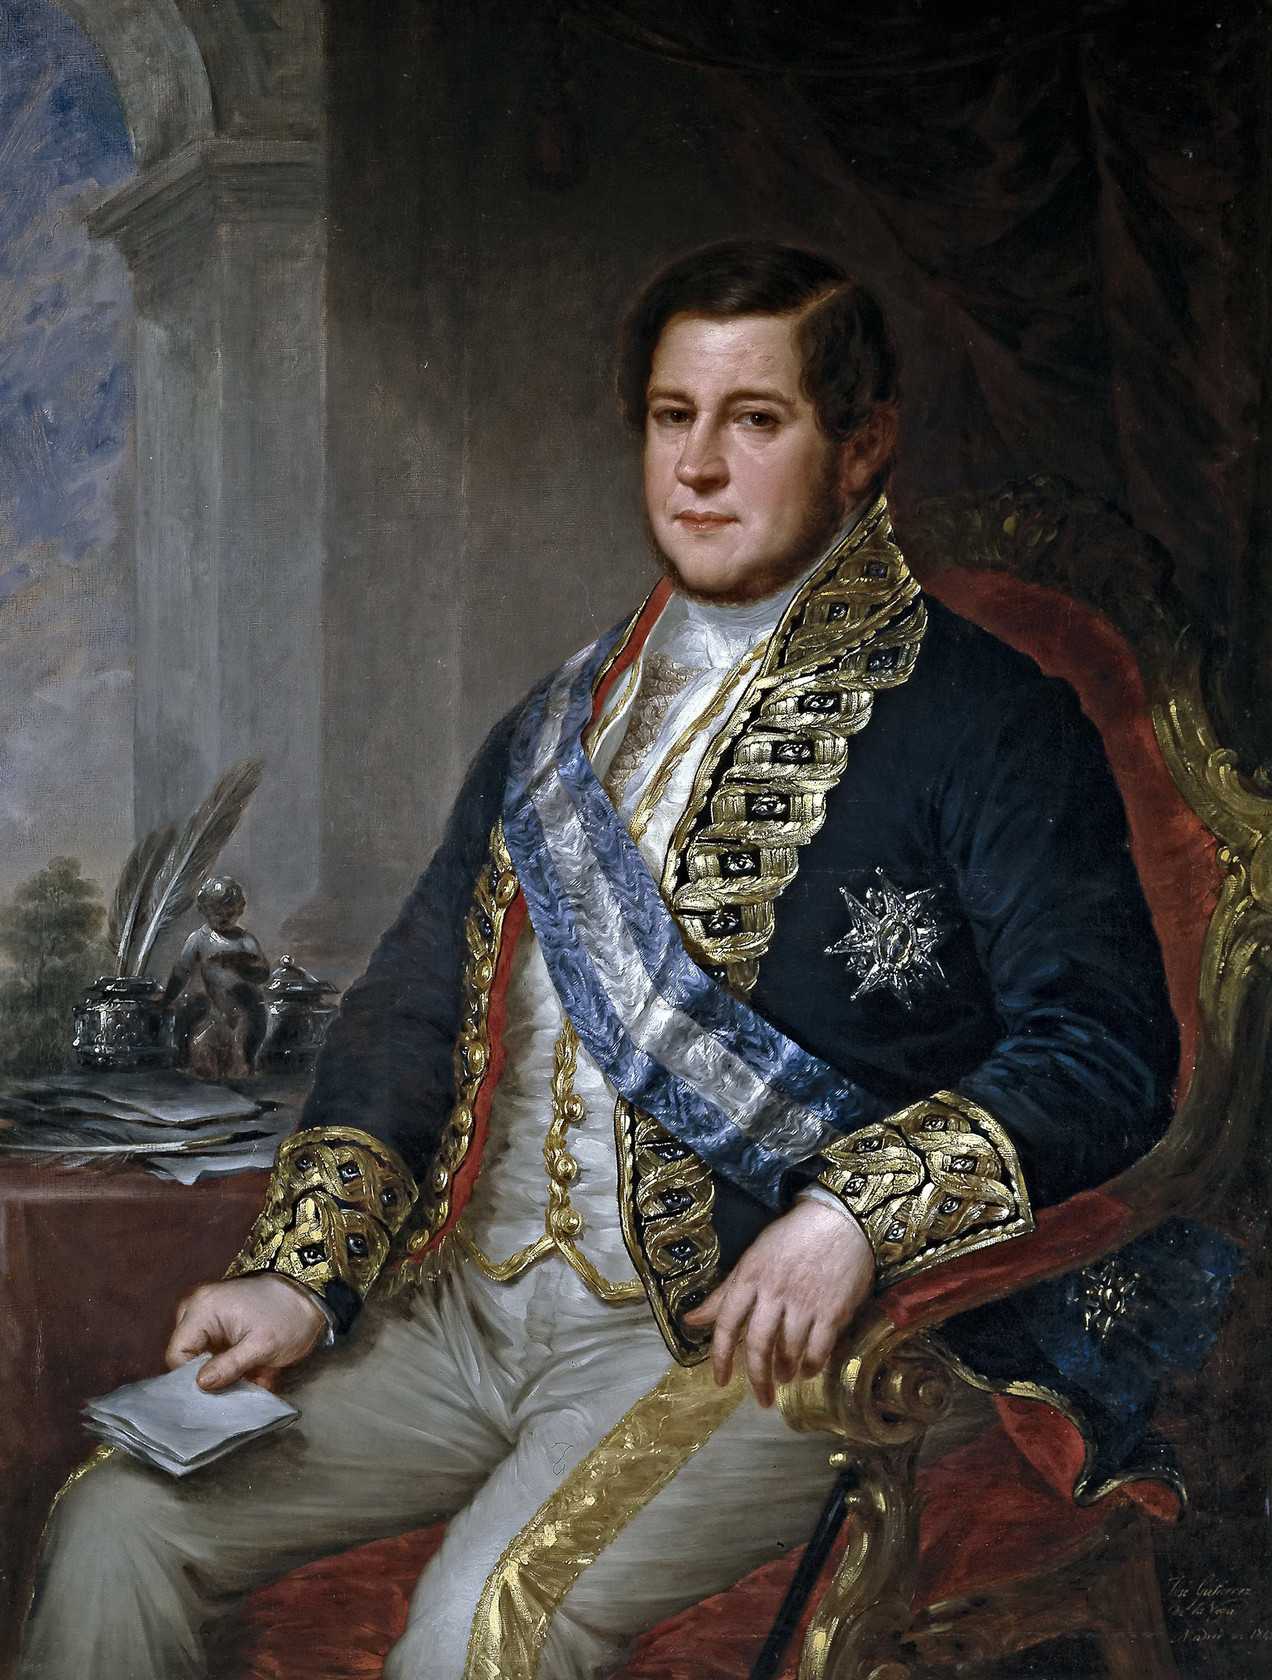 Картина - Хуан Браво Мурильо, министр общественных работ и транспорта, 1848